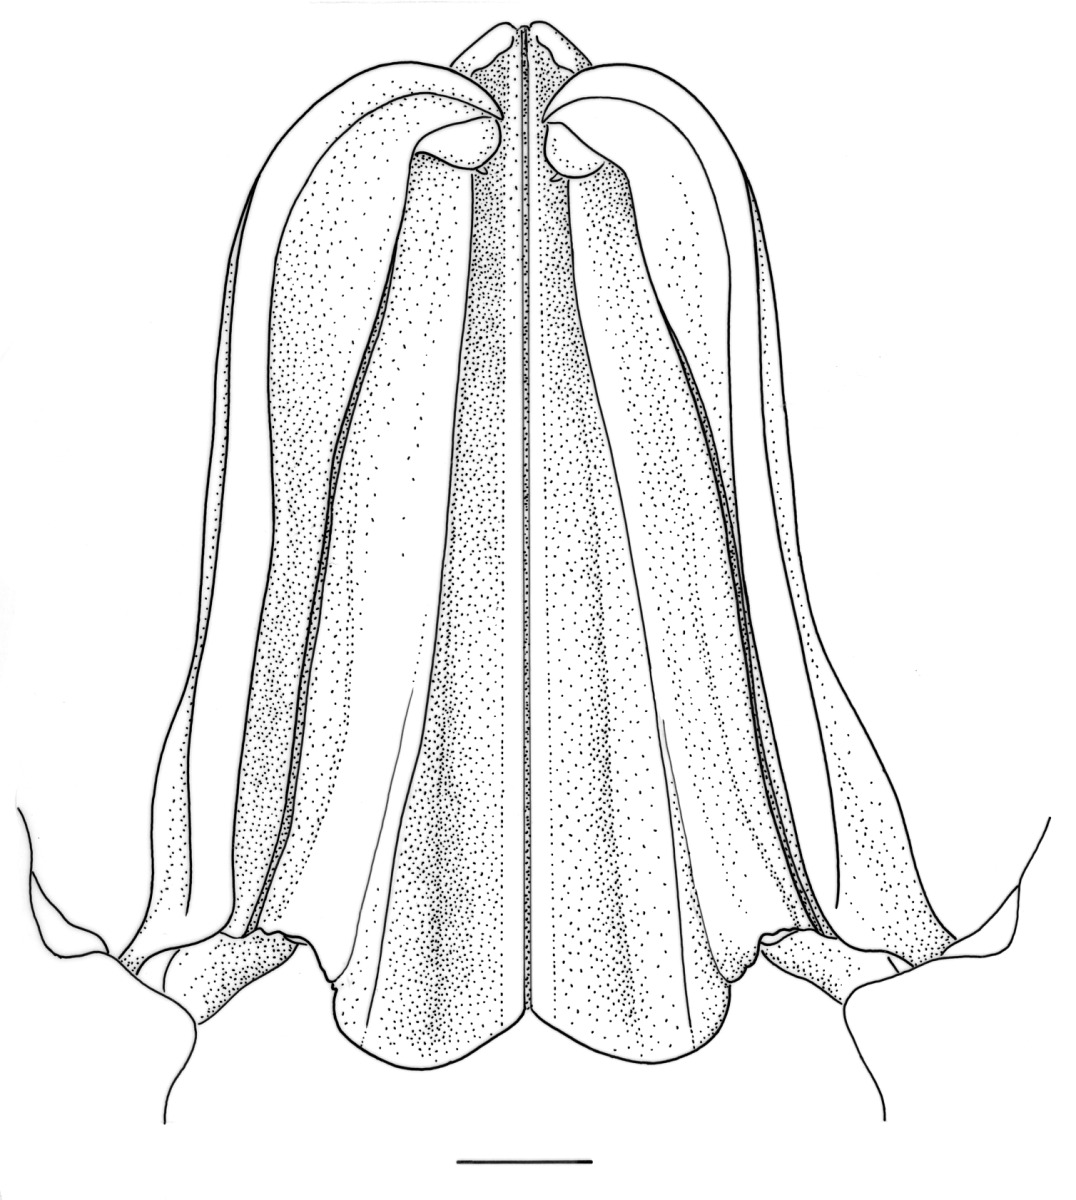 Fenneropenaeus indicus image